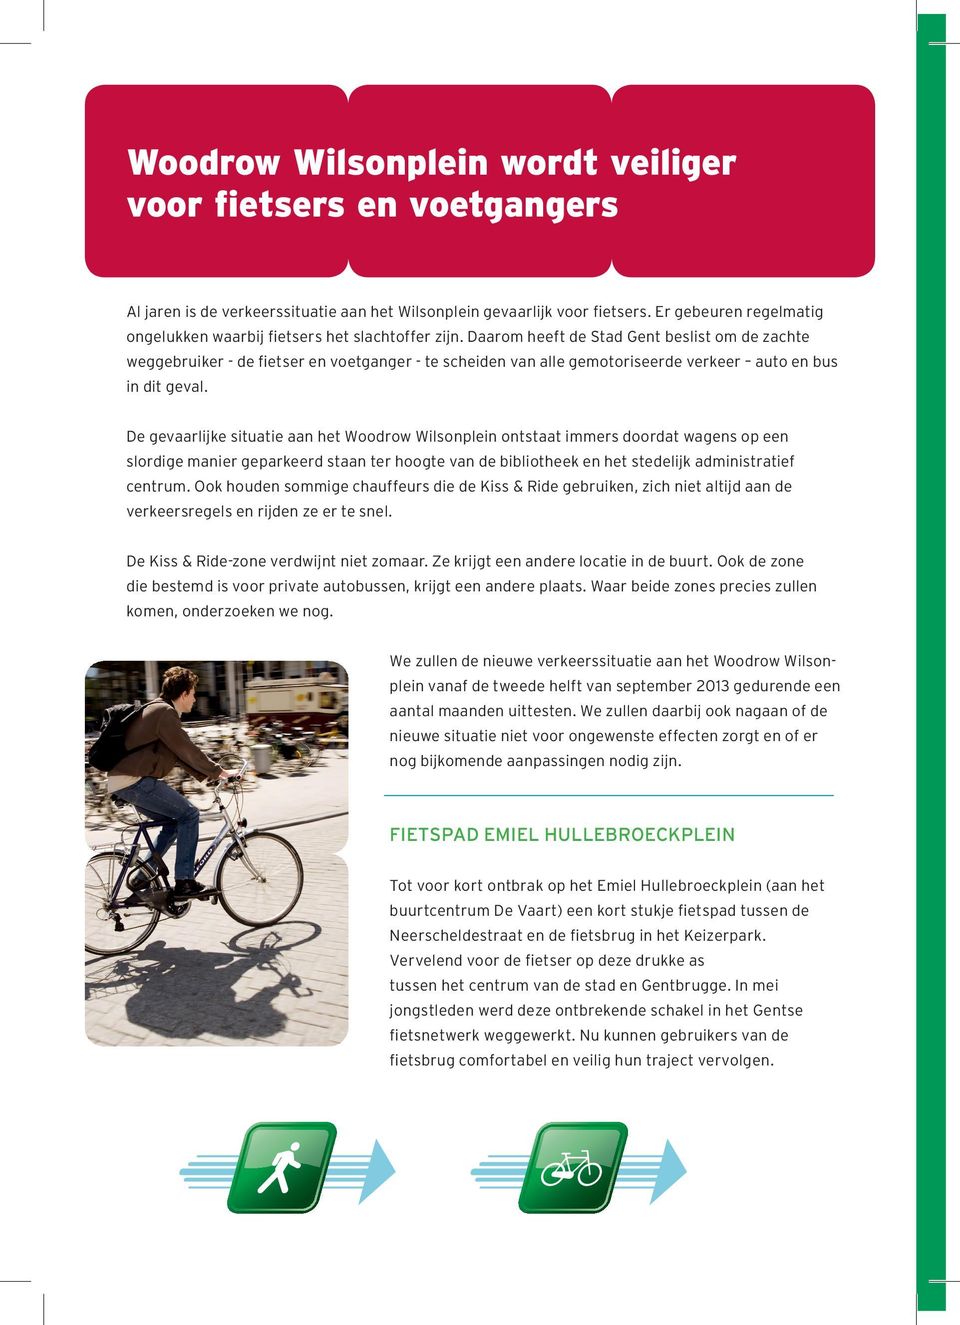 Daarom heeft de Stad Gent beslist om de zachte weggebruiker - de fietser en voetganger - te scheiden van alle gemotoriseerde verkeer auto en bus in dit geval.